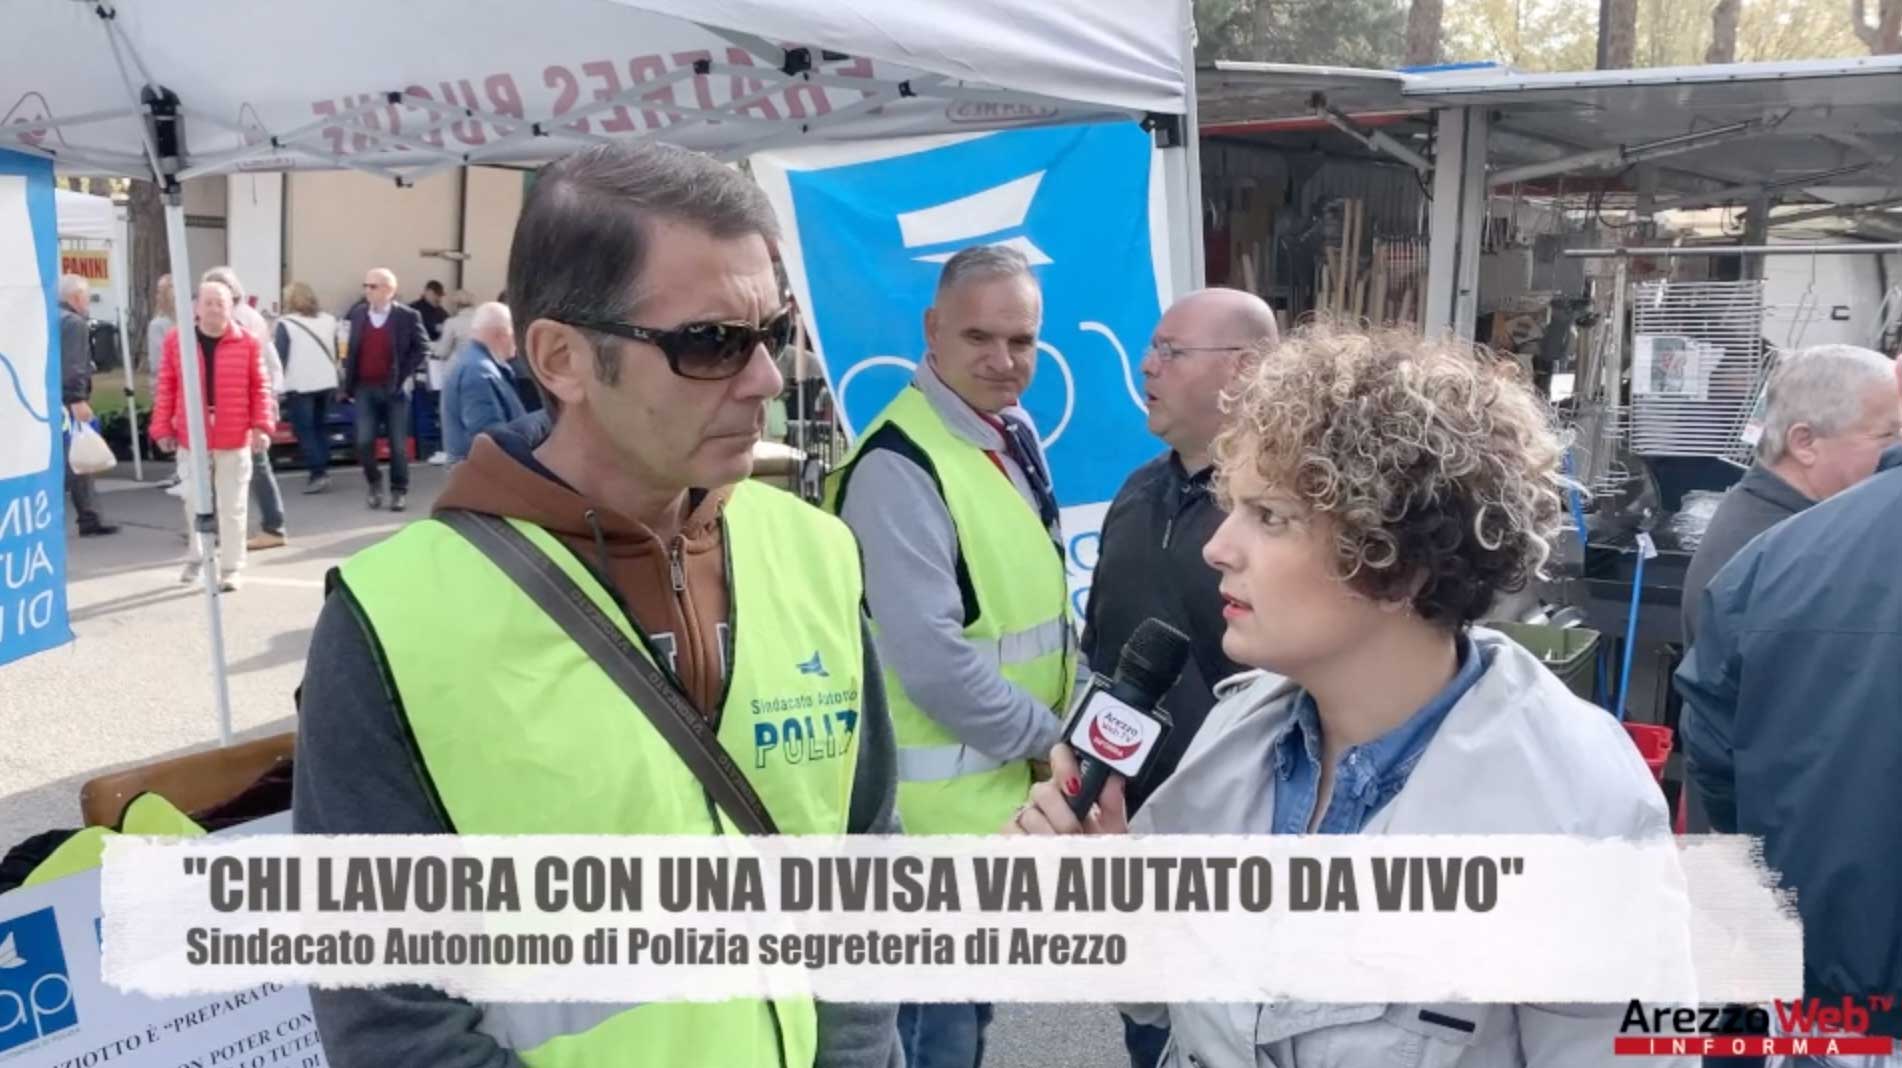 “Chi lavora con una divisa va aiutato da VIVO” il Sindacato Autonomo di Polizia segreteria di Arezzo tra i banchi del mercato di Arezzo per sensibilizzare i cittadini